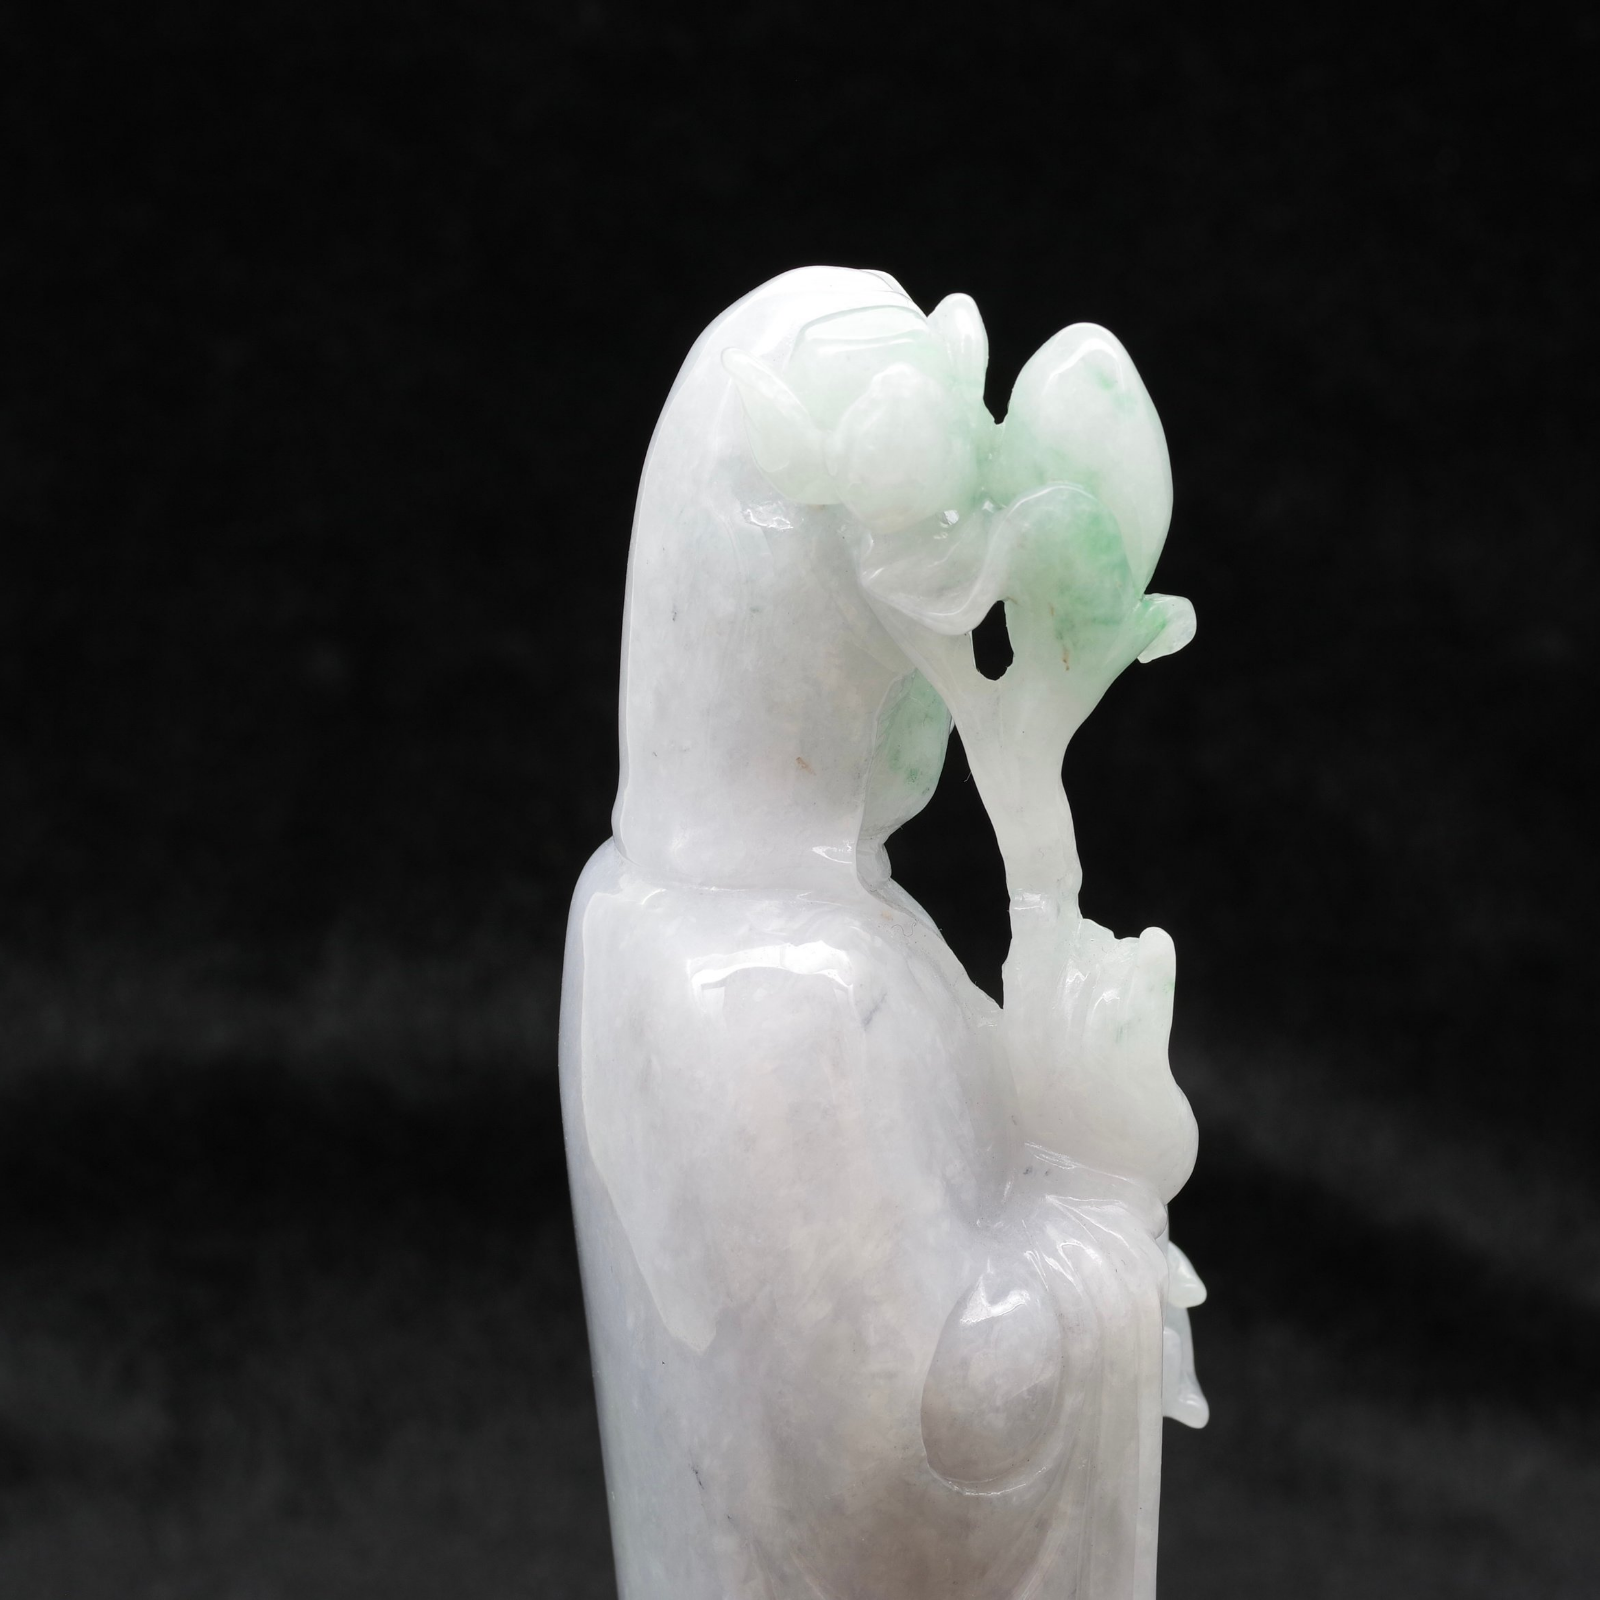 翡翠の水瓶観音菩薩像 ミャンマー産 - ハイグレード天然石・ジュエリー 